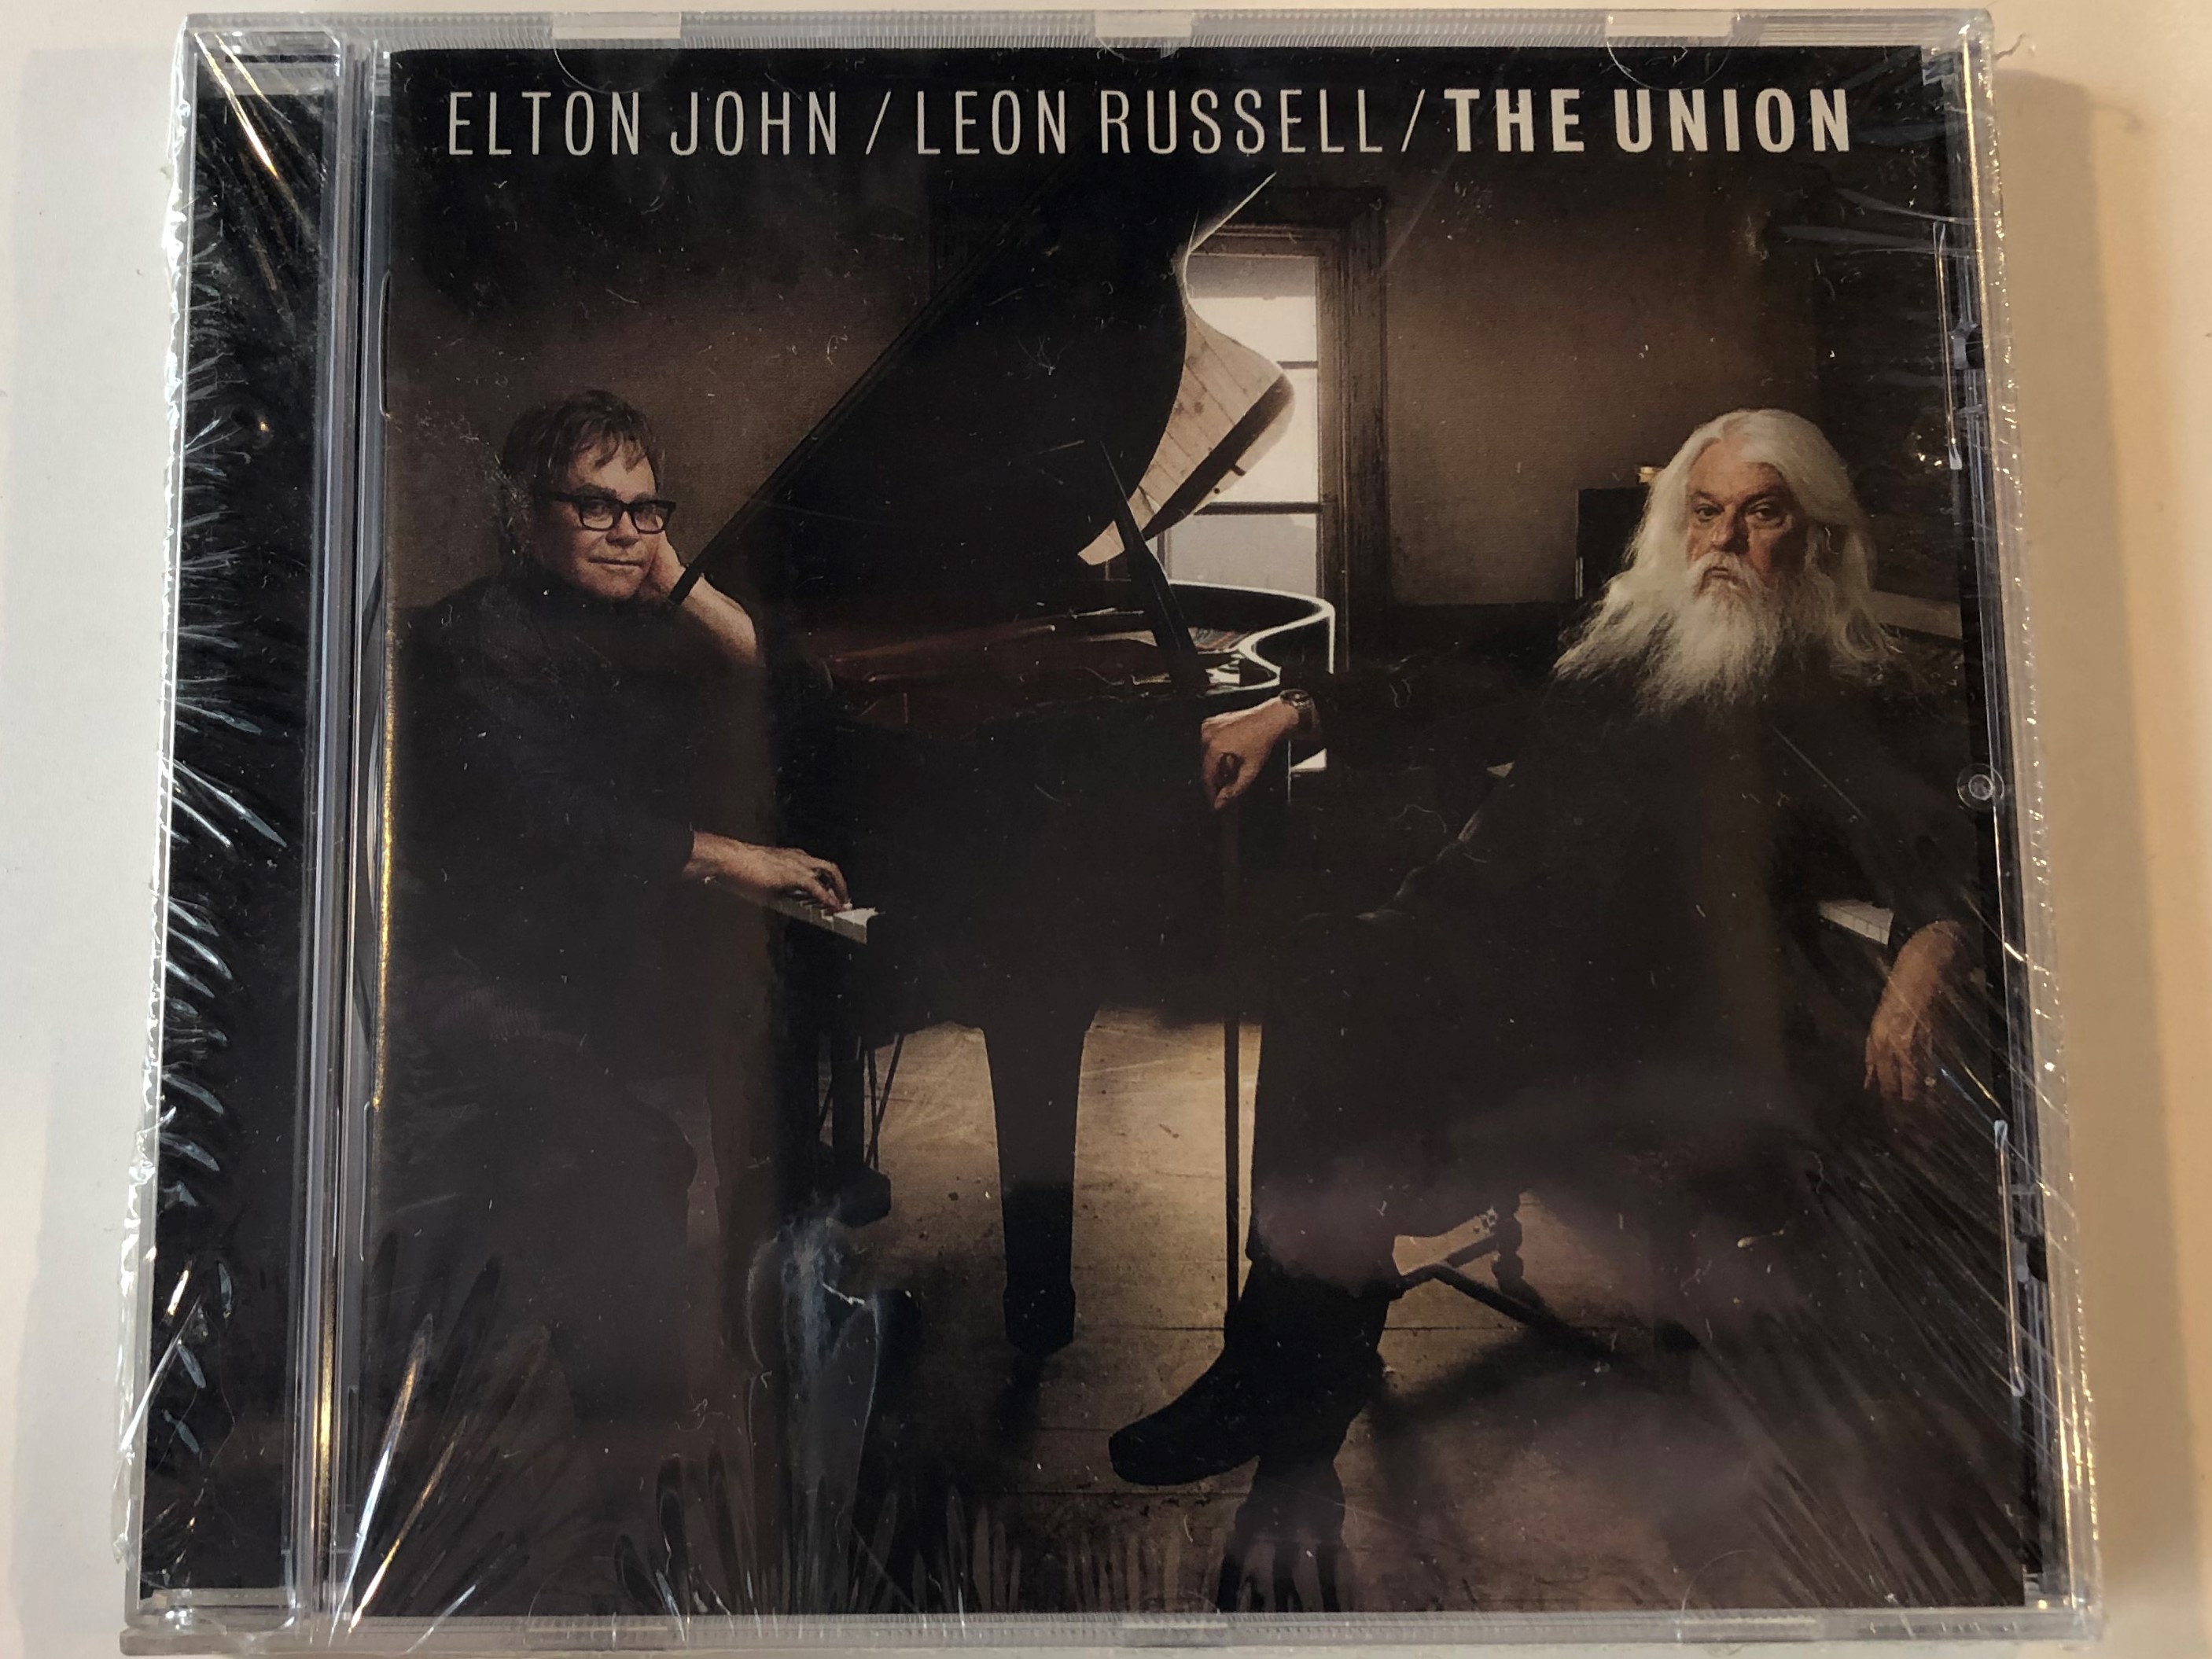 elton-john-leon-russell-the-union-mercury-audio-cd-2010-2748480-1-.jpg